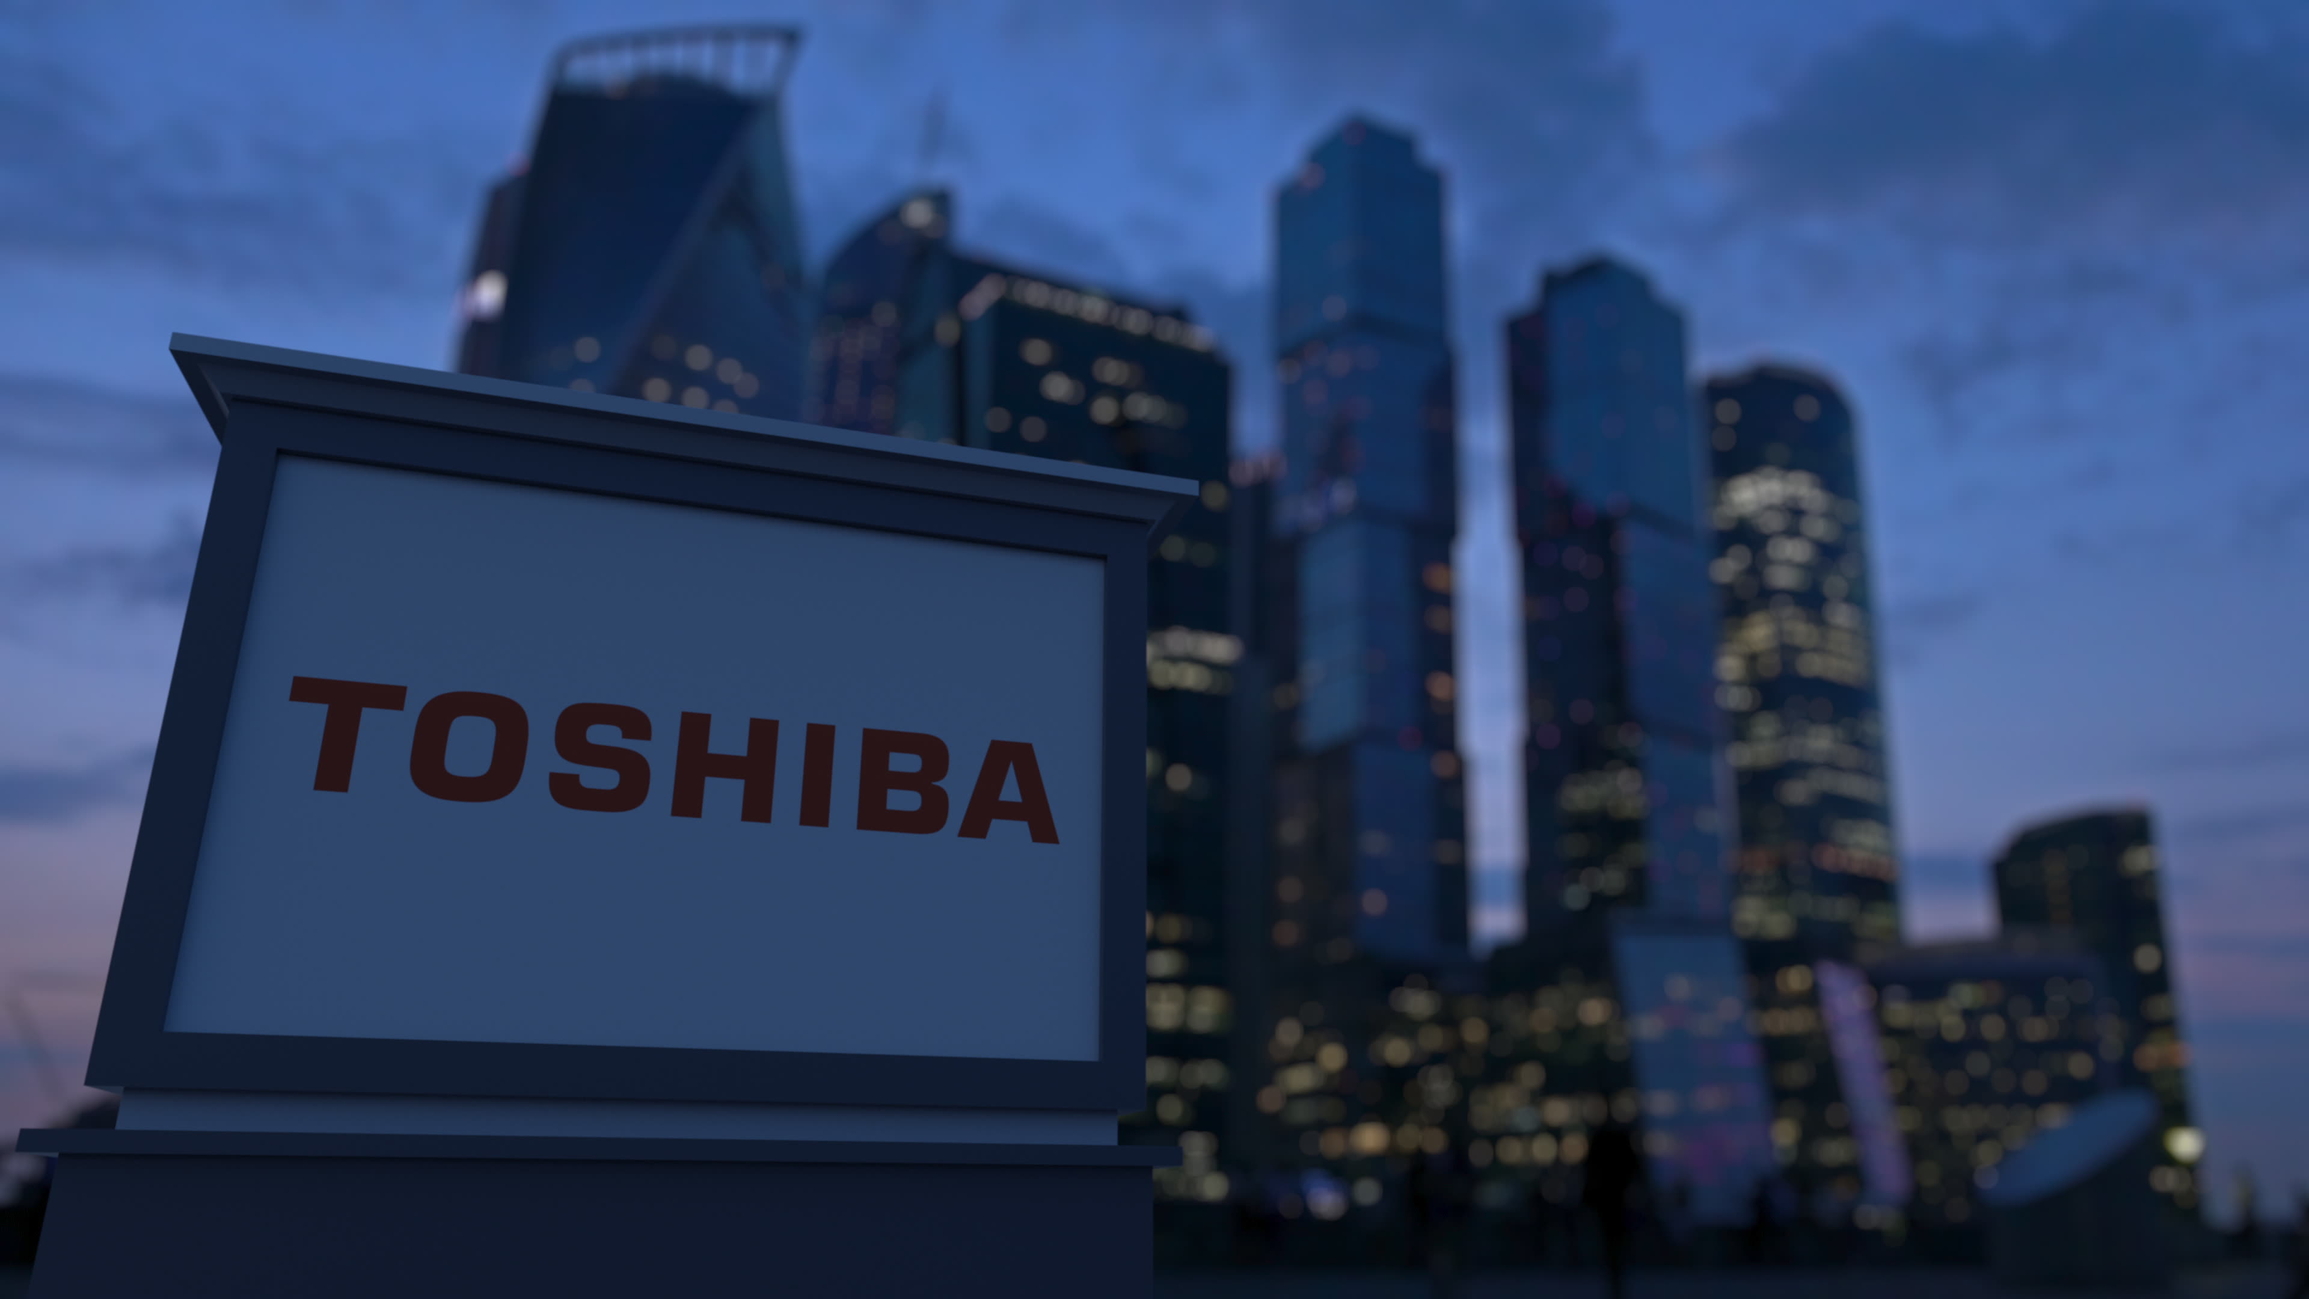 Toshiba despede 4.000 pessoas para reduzir custos